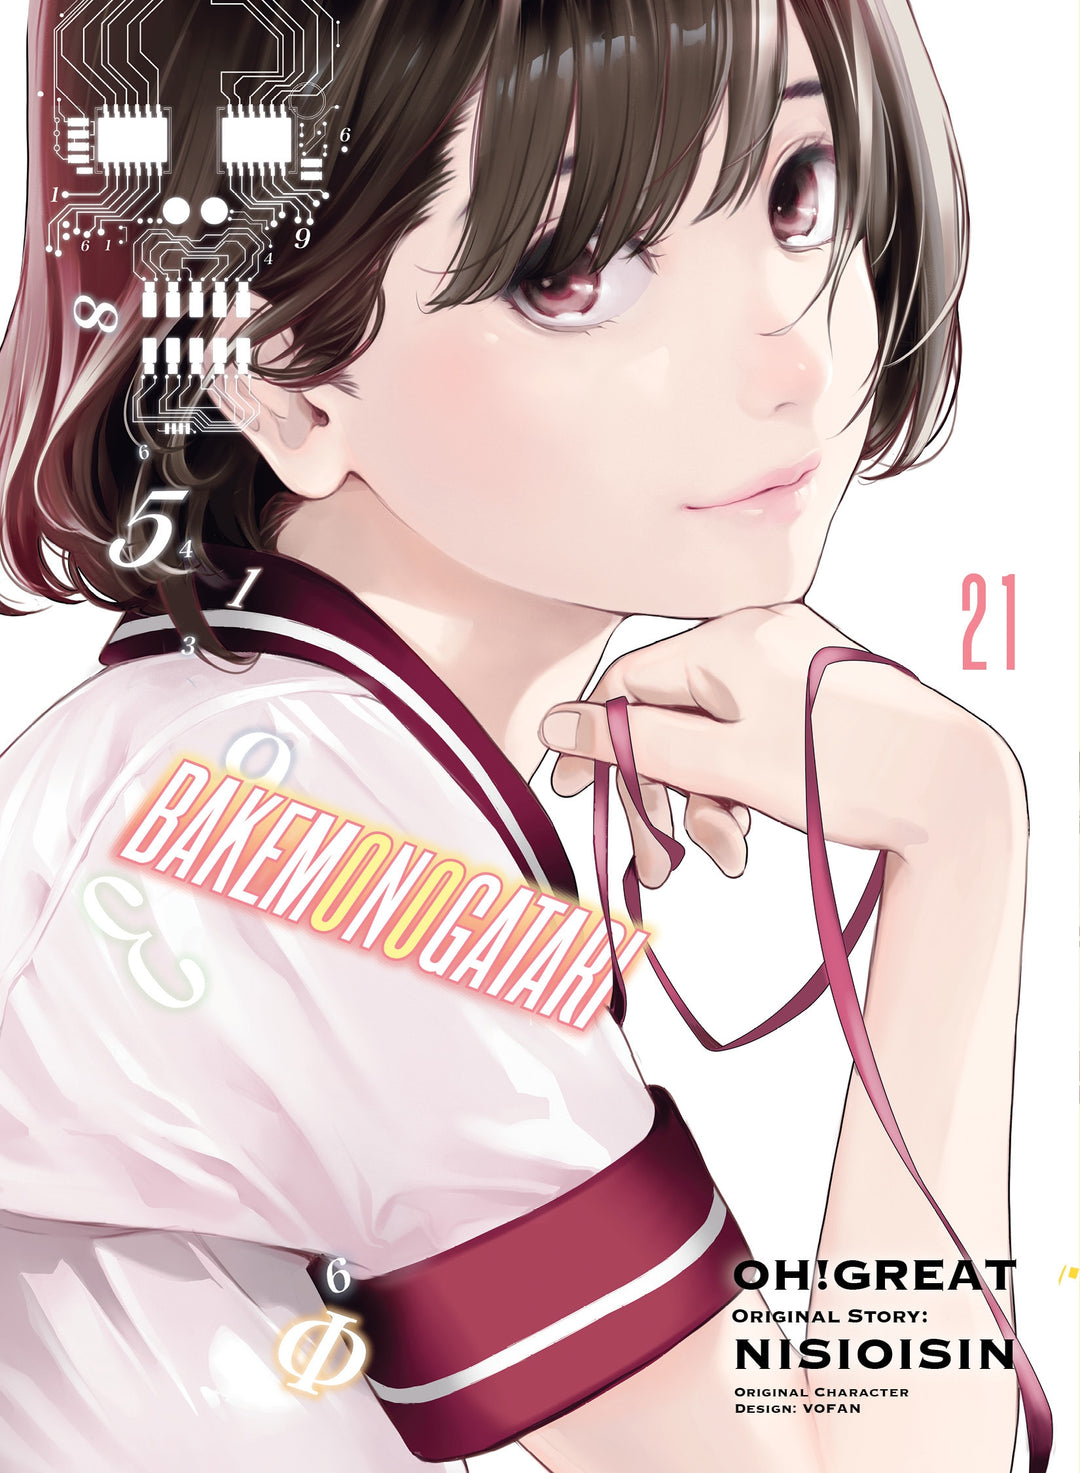 BAKEMONOGATARI (manga), Vol. 21